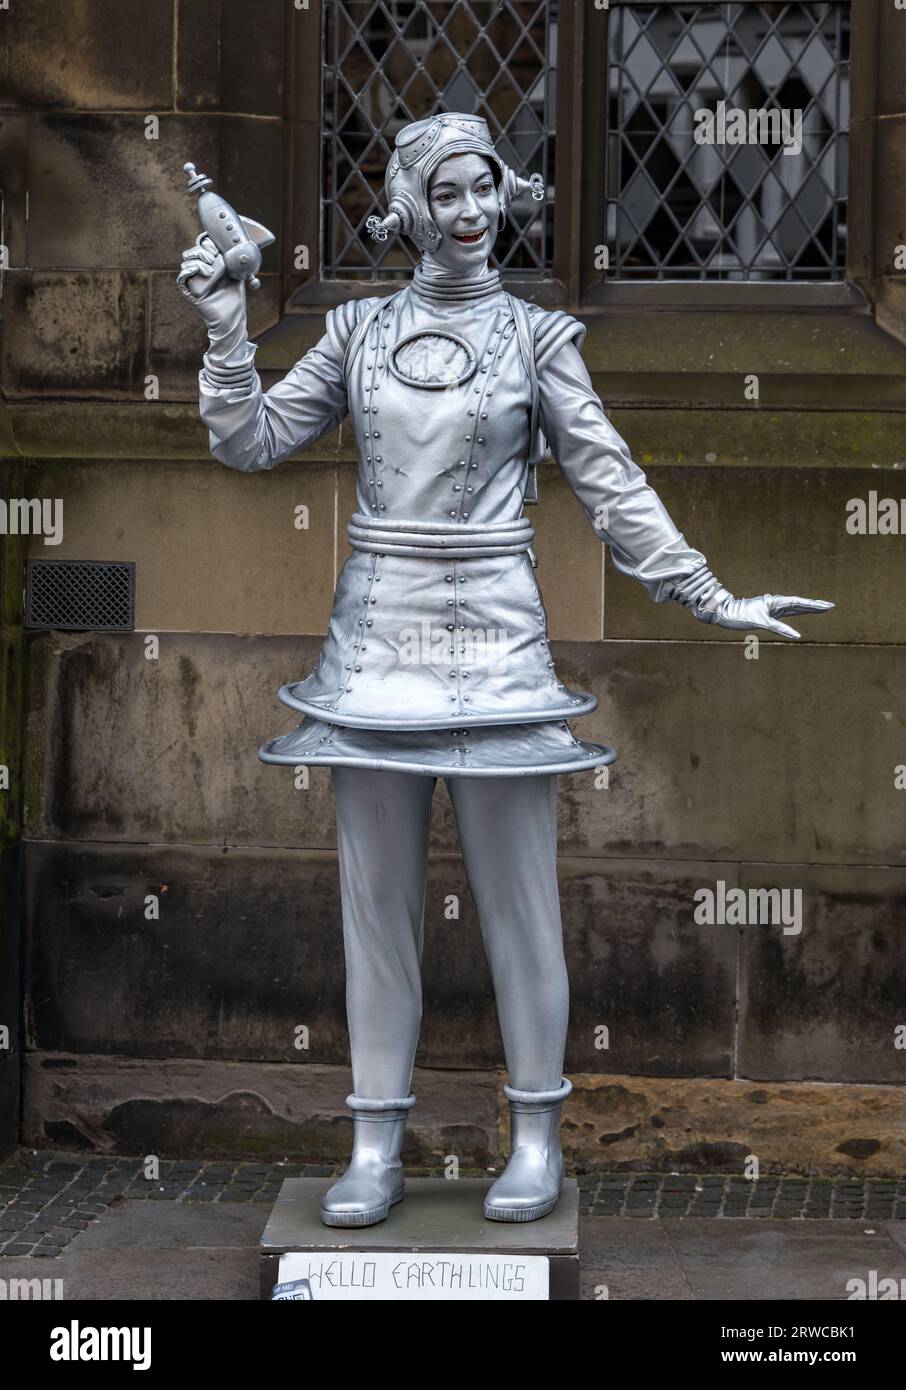 Living statue street performer, Edinburgh Festival Fringe, Royal Mile, Scotland, UK Stock Photo